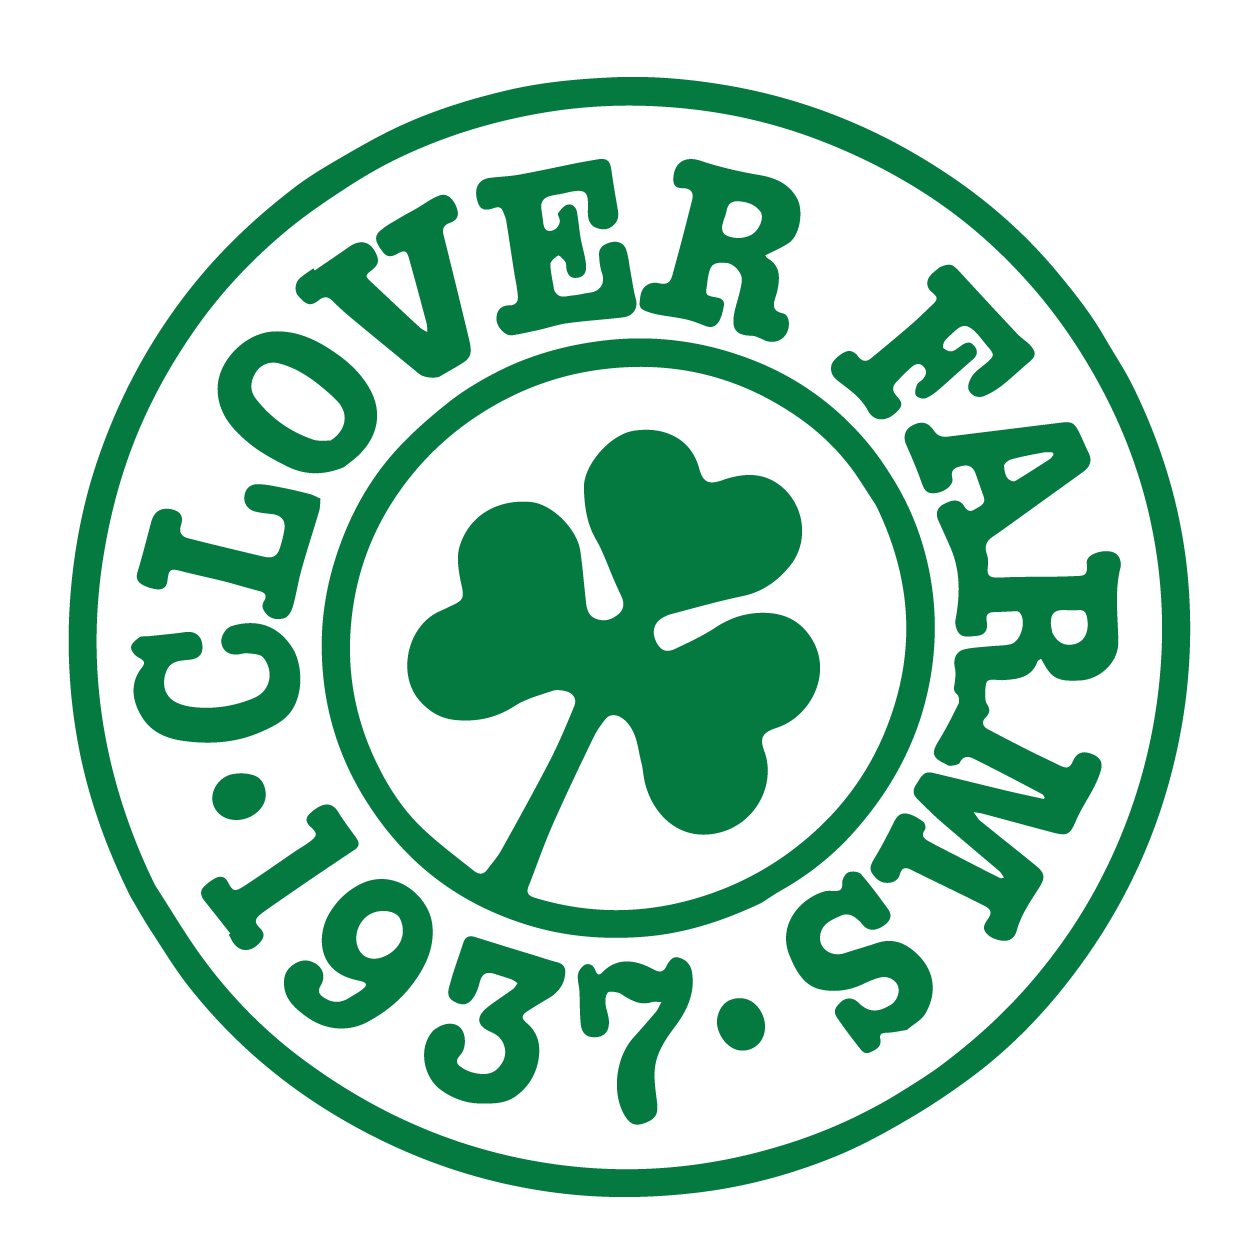 Company logo of Clover Farms Dairy